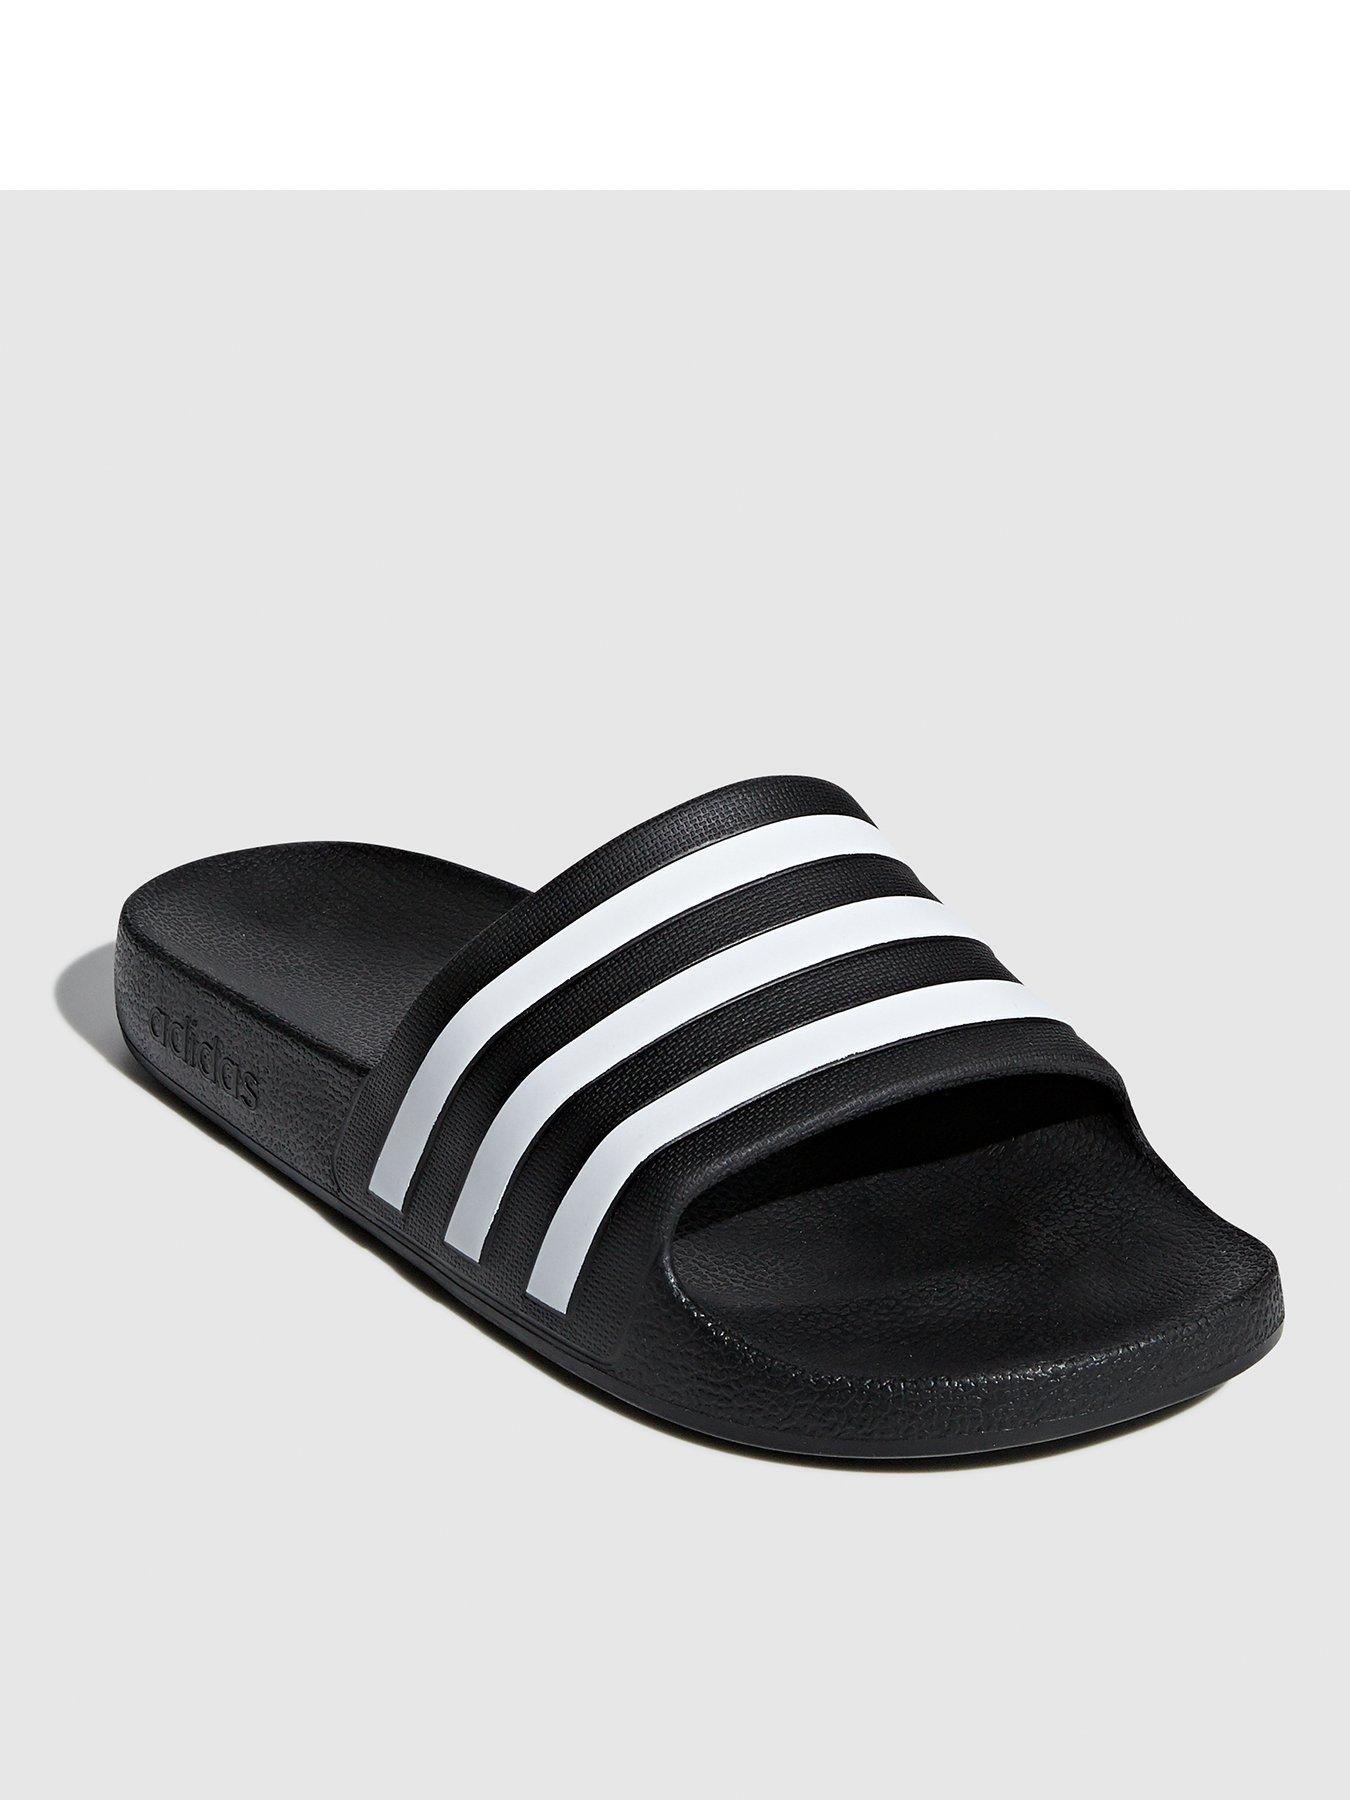 Men's Flip Flops, Sliders \u0026 Sandals 